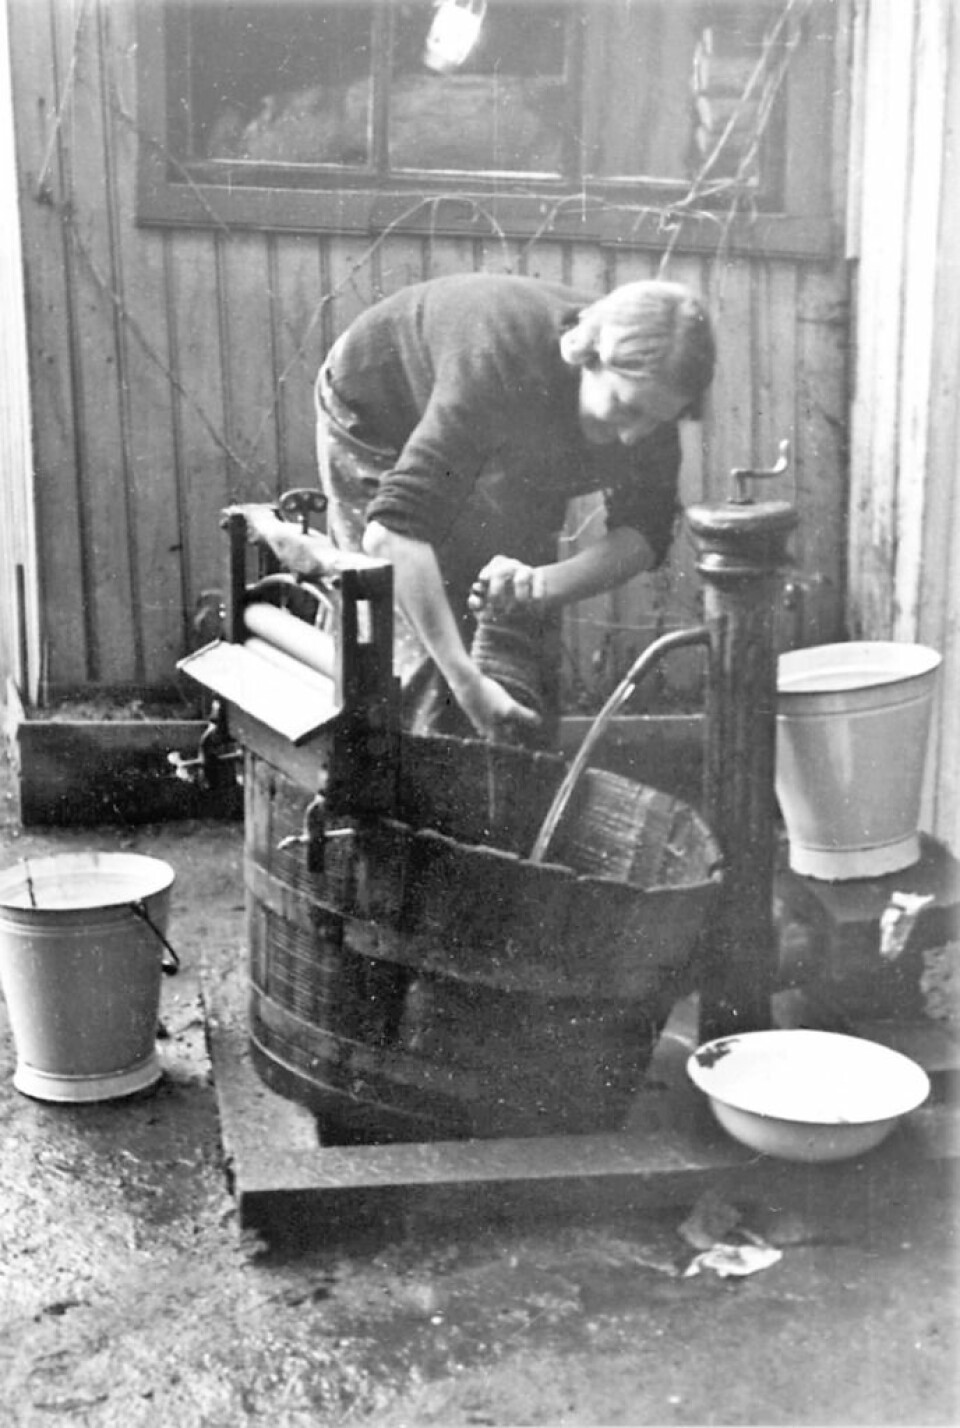 Kvinne vasker tøy utendørs, utstyrt med vannpost. Foto: Nanna Broch